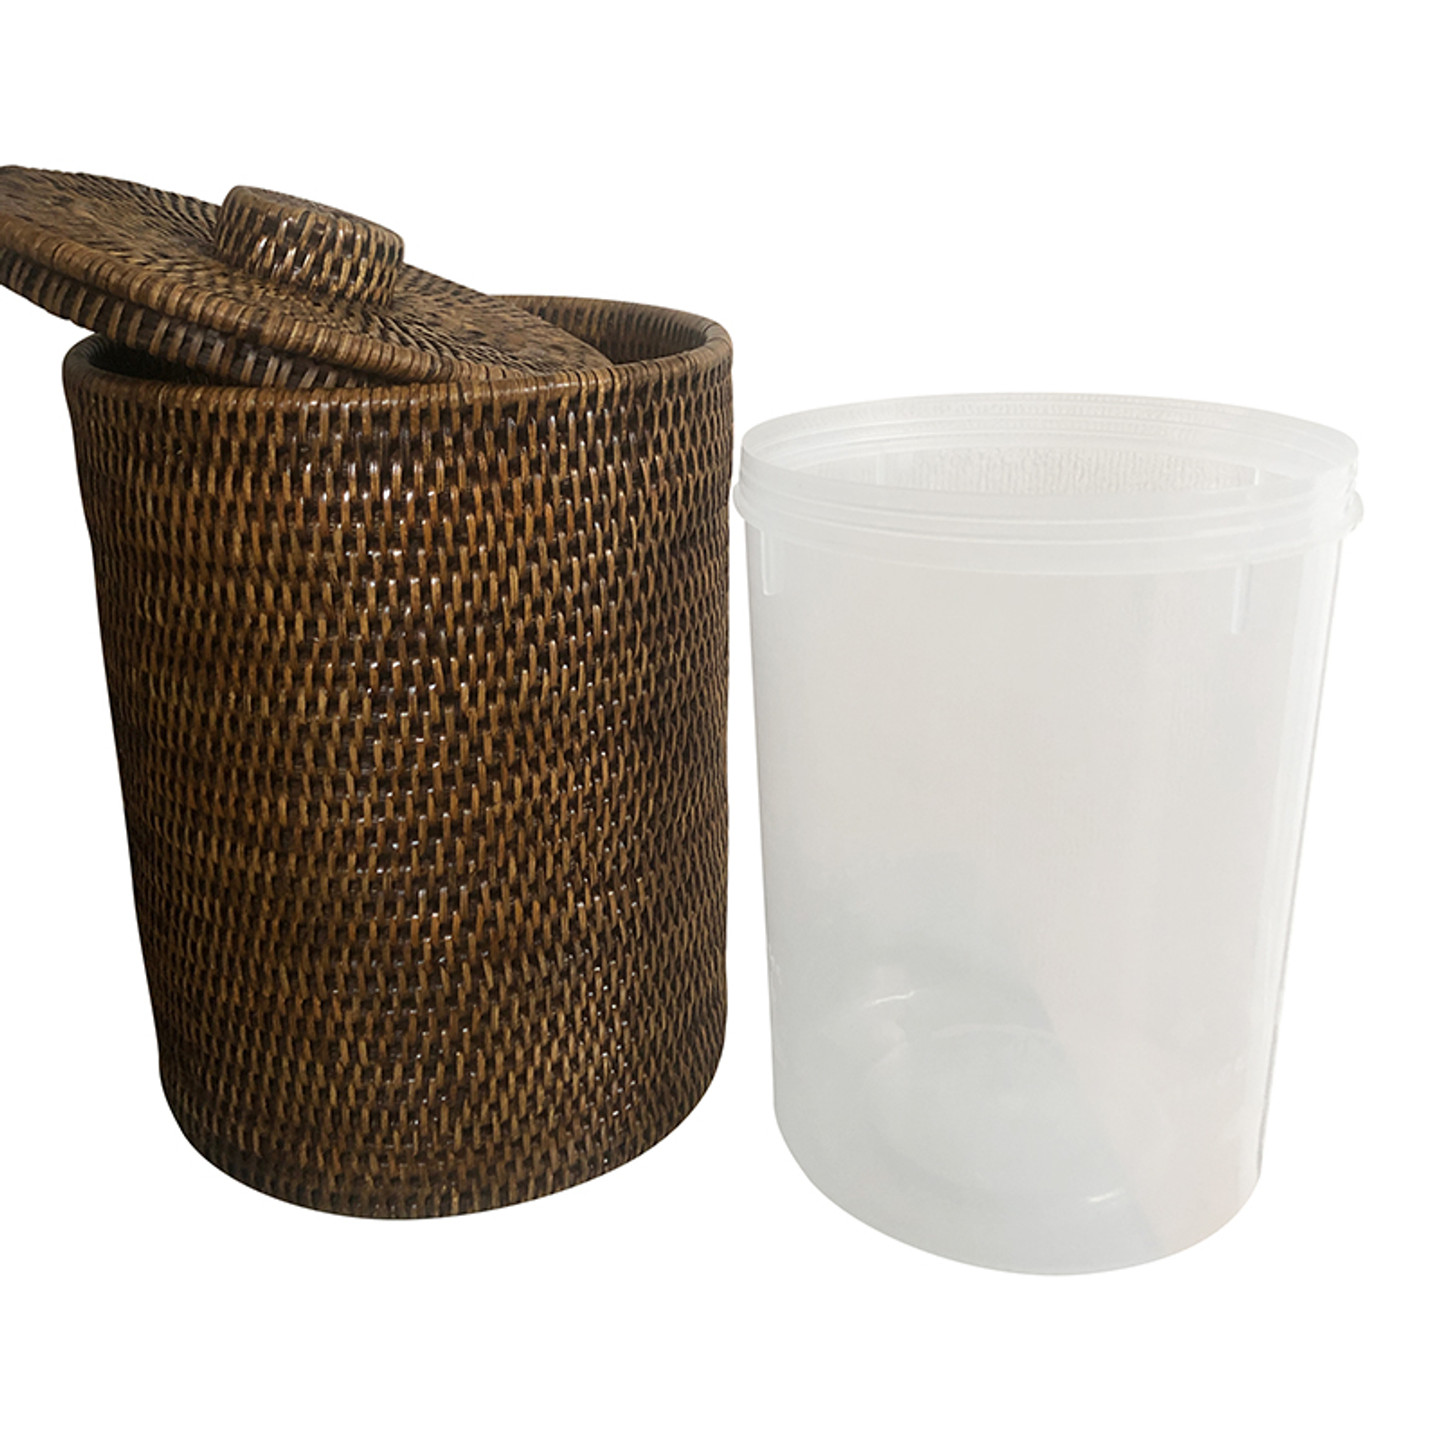 Stylish Waste Paper Bin / Waste Paper Basket - The Small Woven Rattan  Wicker Waste Paper Bin With Lid